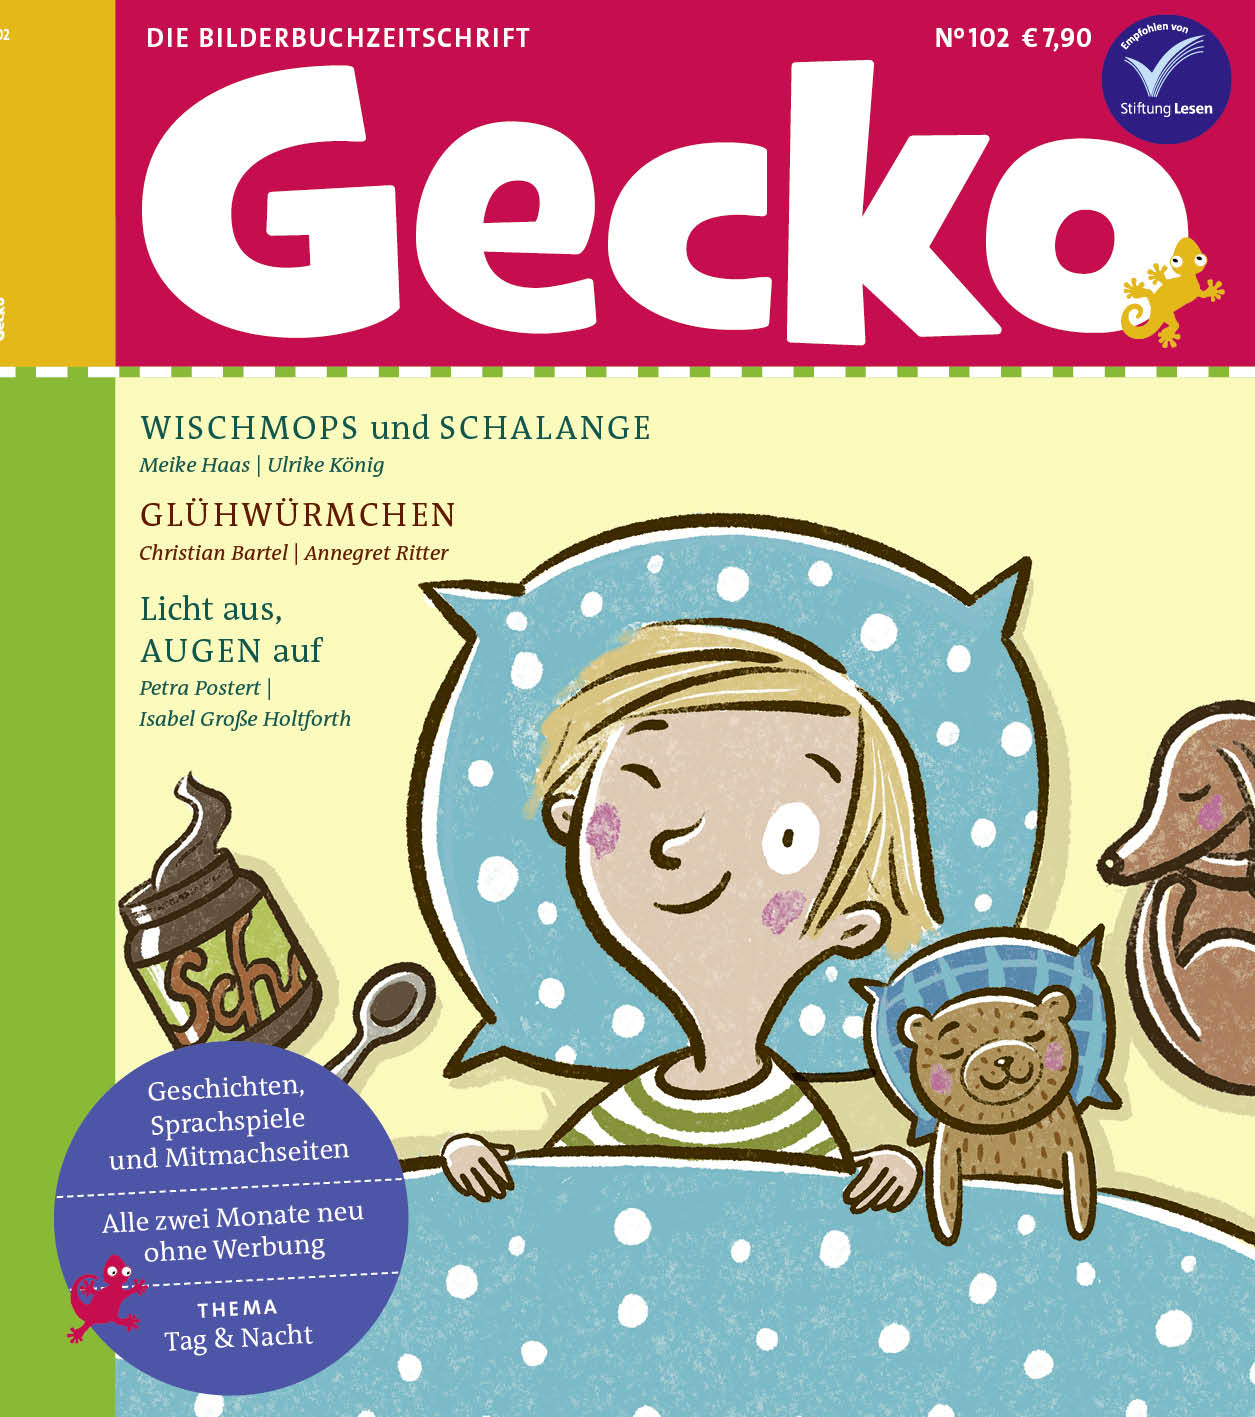 Cover, Lesemempfehlung, Gecko, Bilderbuchzeitschrift